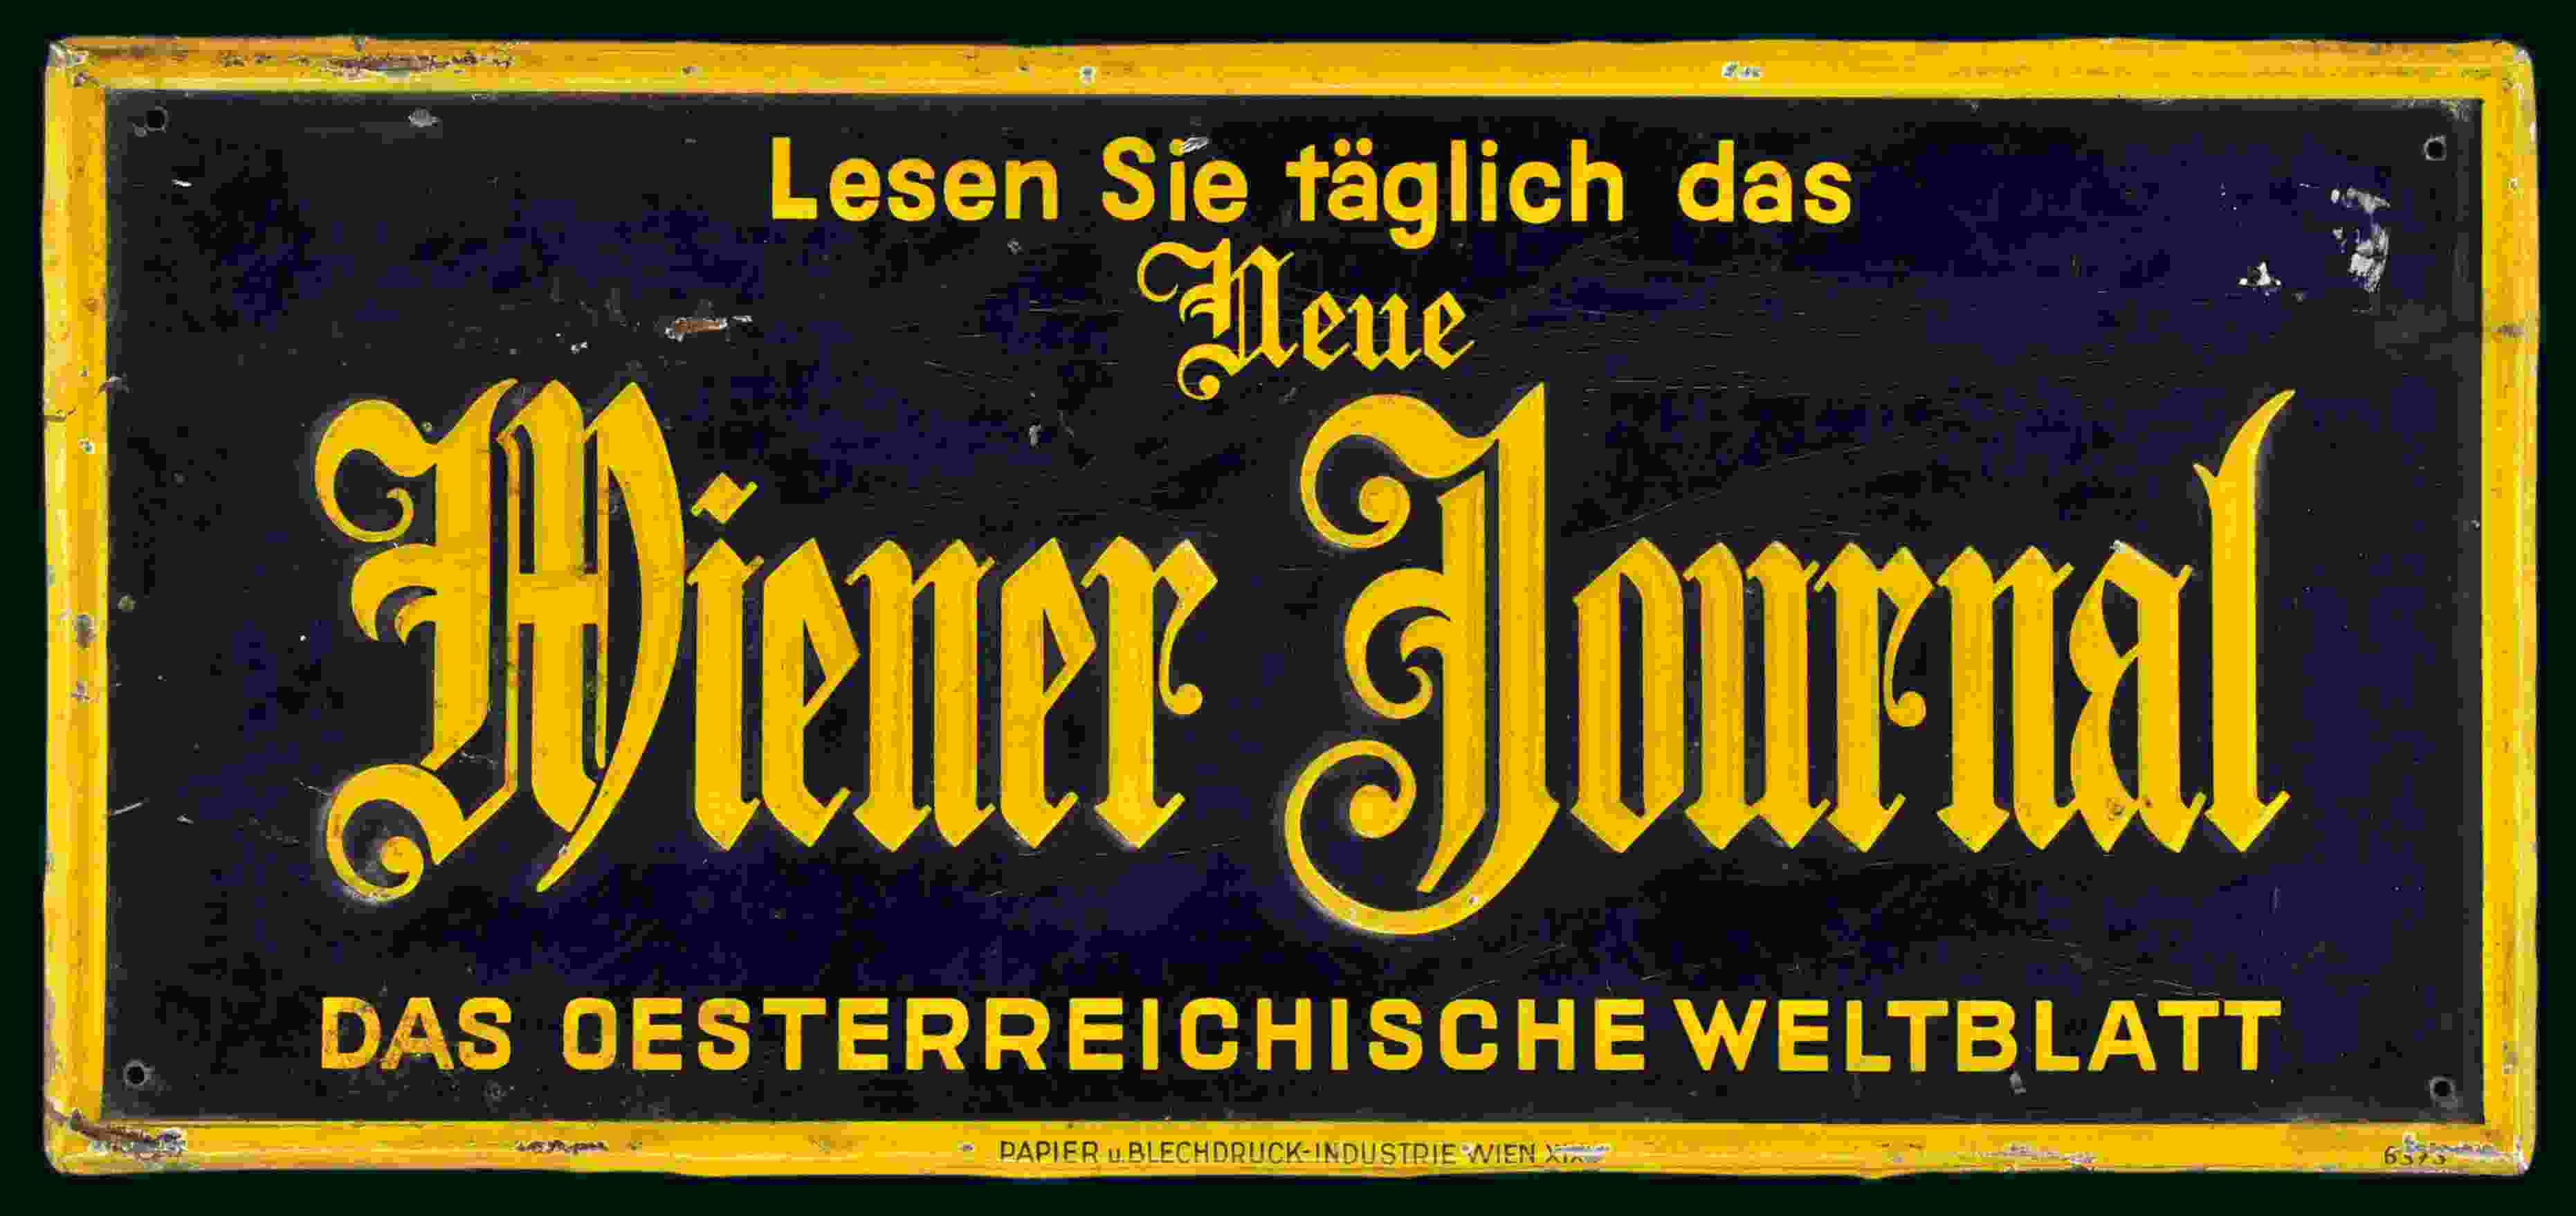 Wiener Journal 